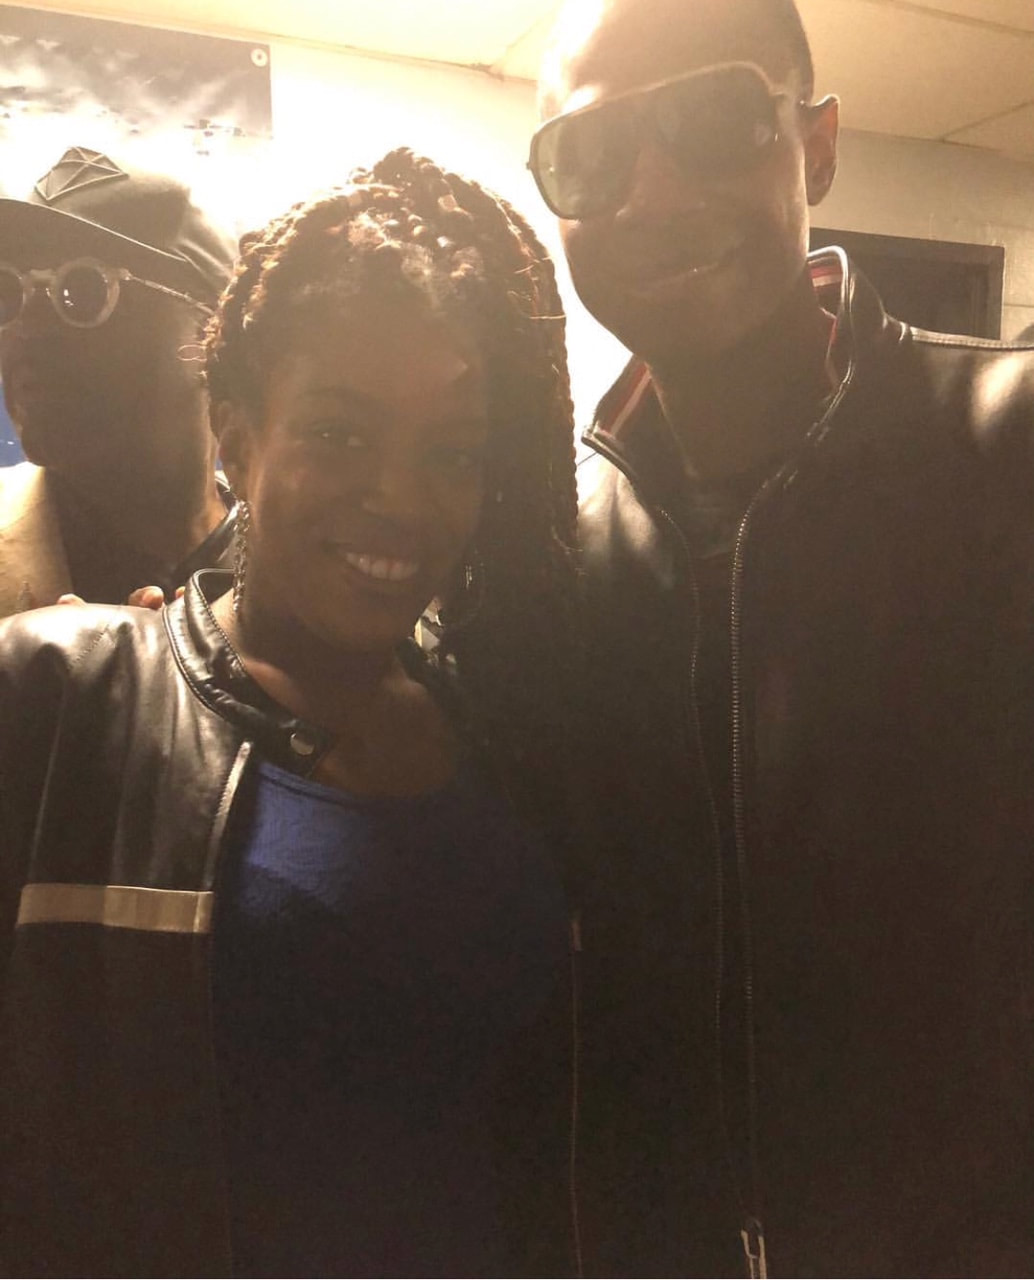 Jennifer D. Laws and Doug E. Fresh at B.B. King on April 25, 2018